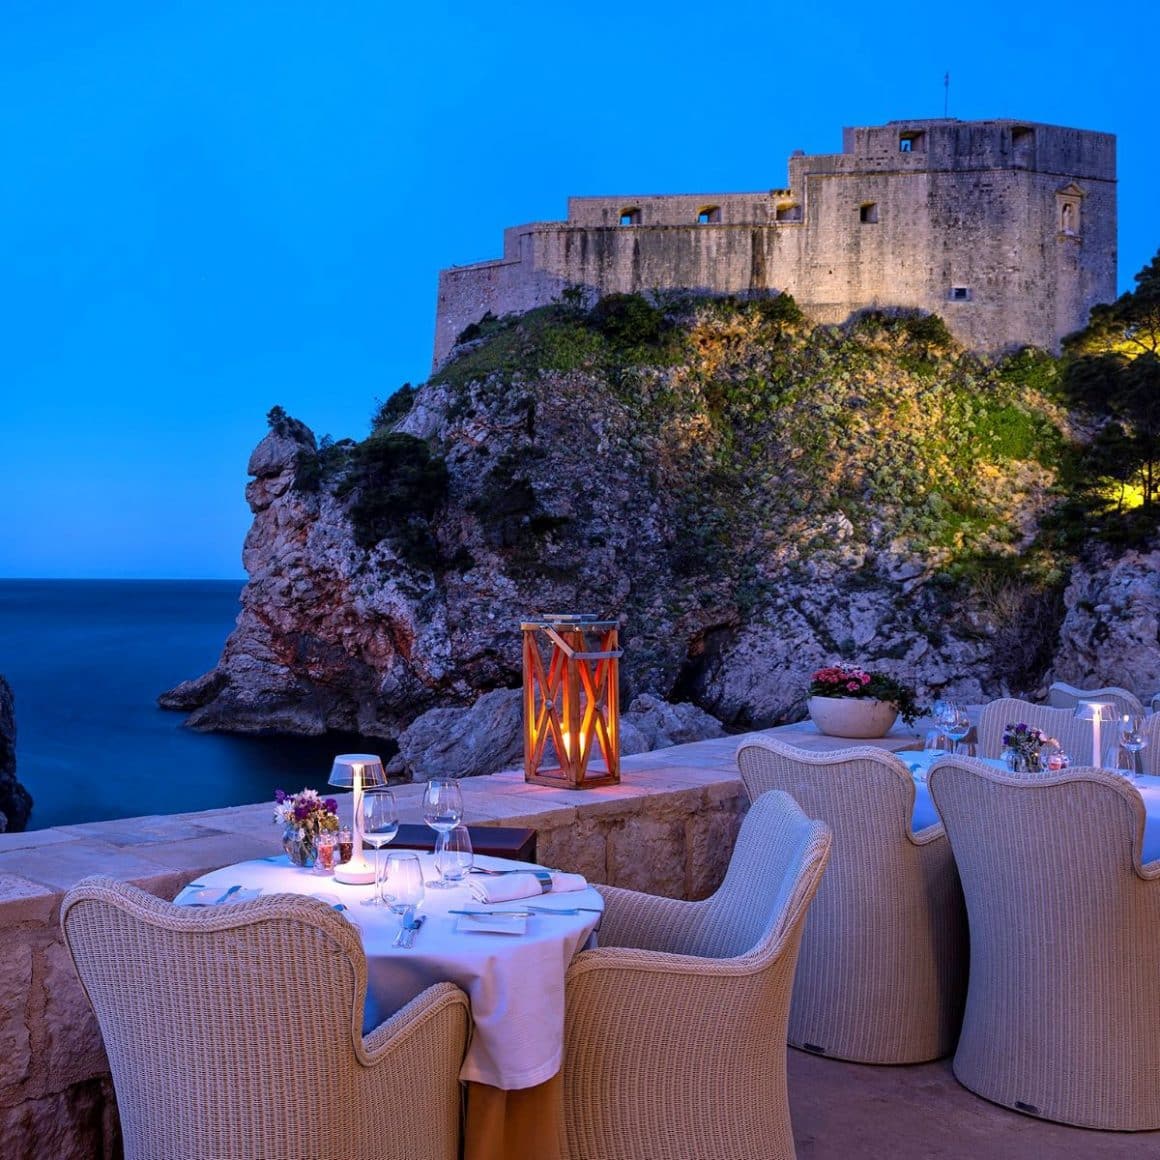 Terasa restaurantului Nautika, pe maulul apei, fotografiat seara. Unde am mâncat în Dubrovnik